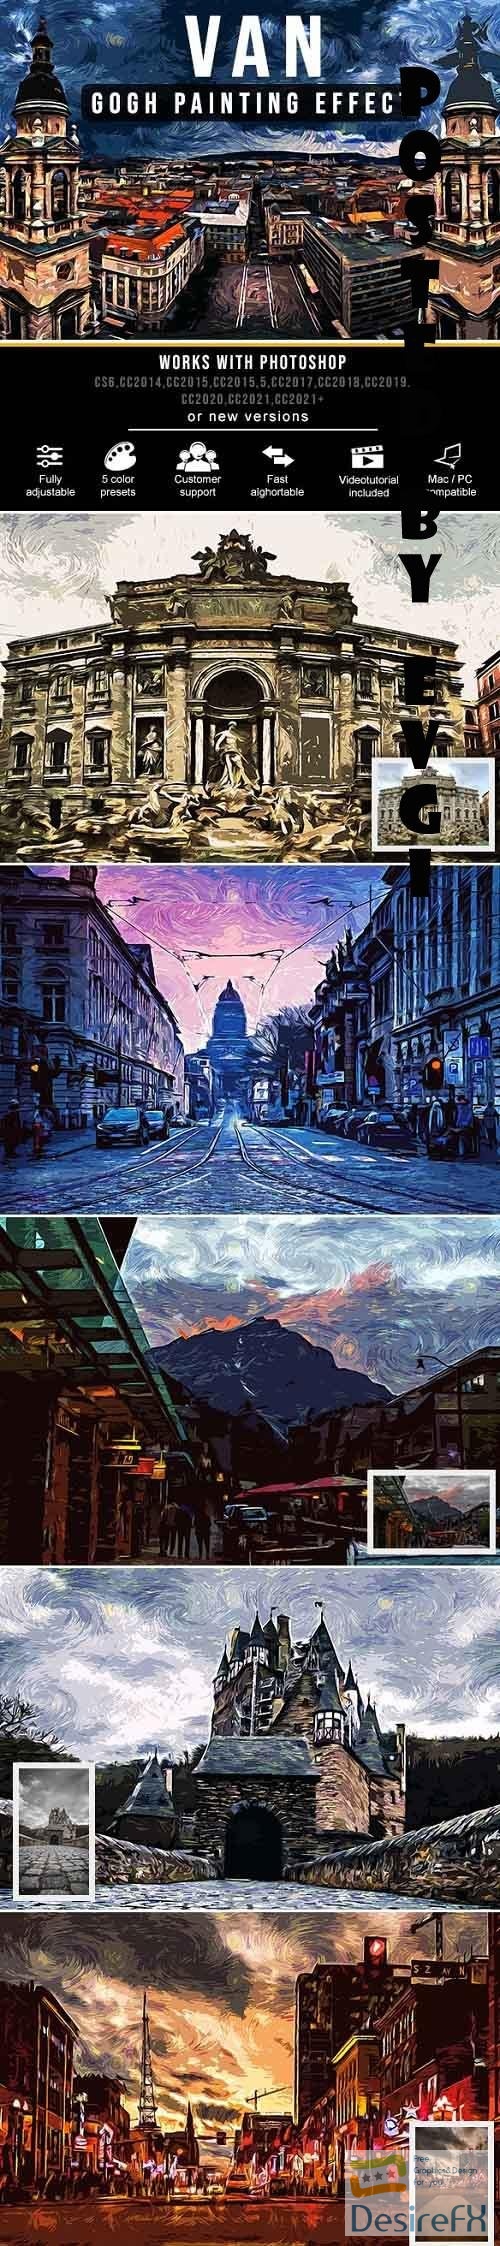 Van Gogh Painting Effect - 33940443